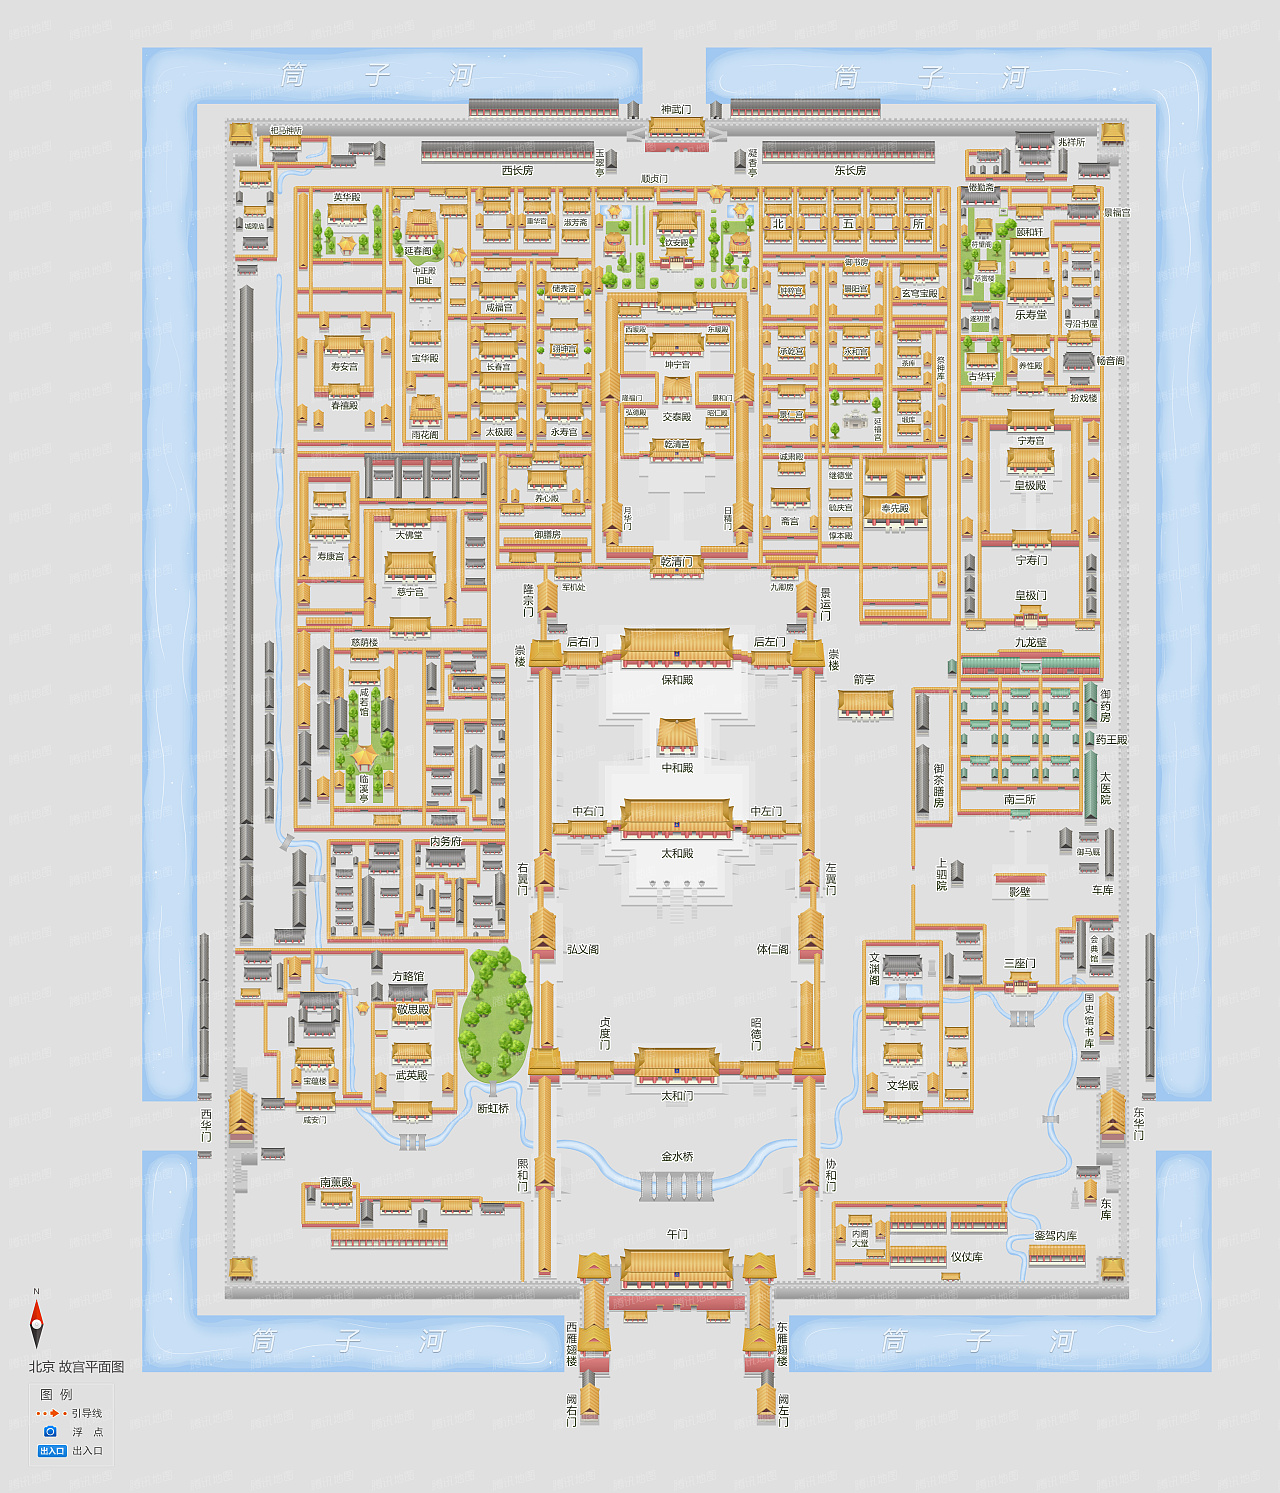 腾讯地图手绘平面图样例—故宫博物院